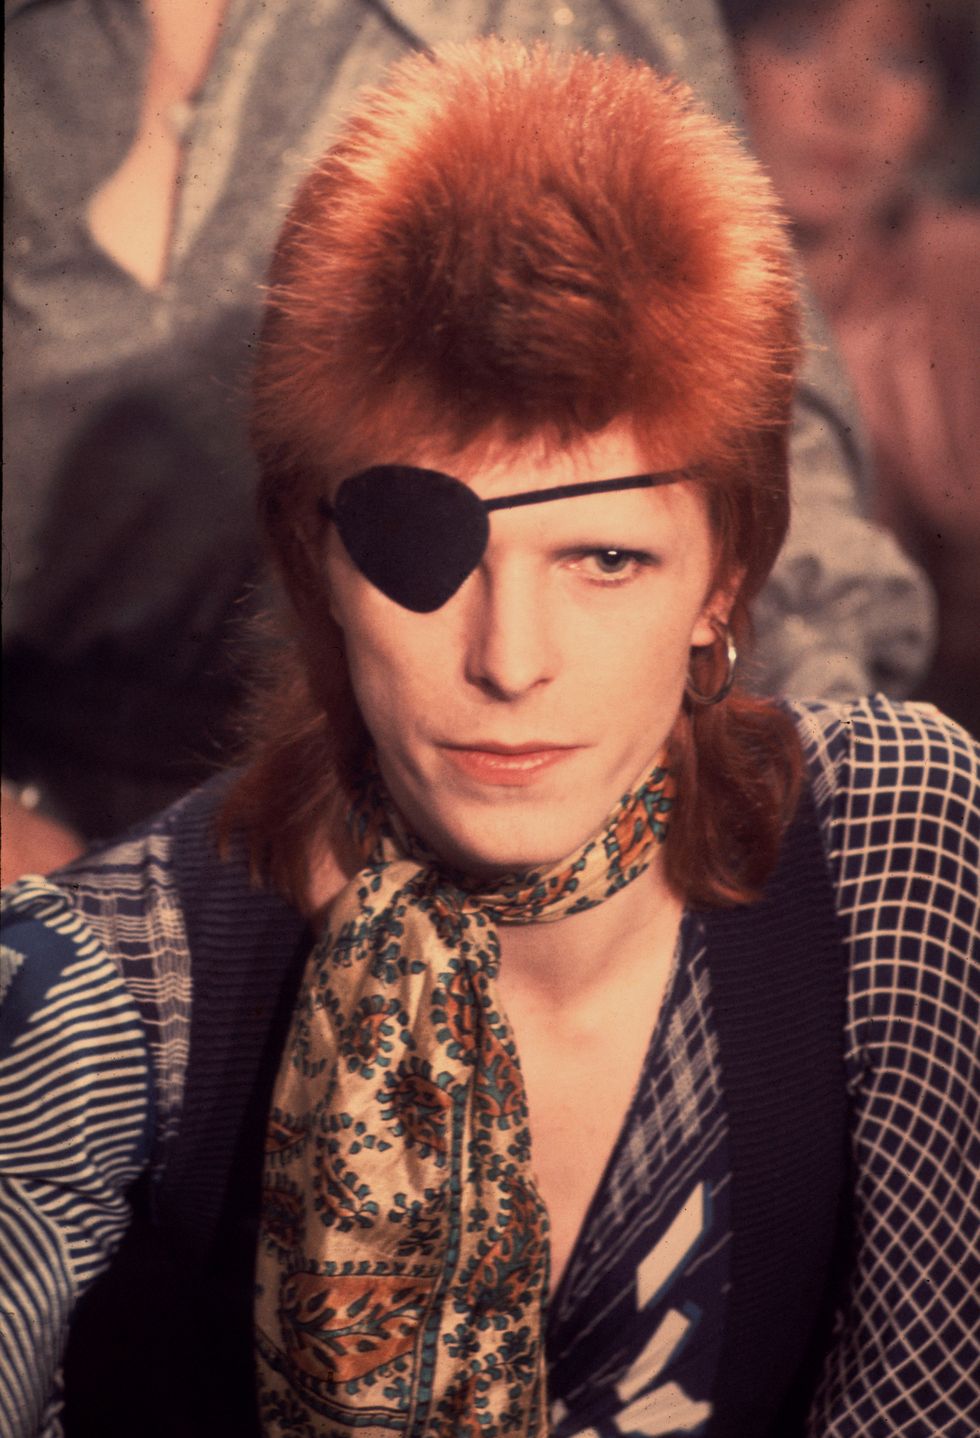 david bowie as ziggy stardust in 1972